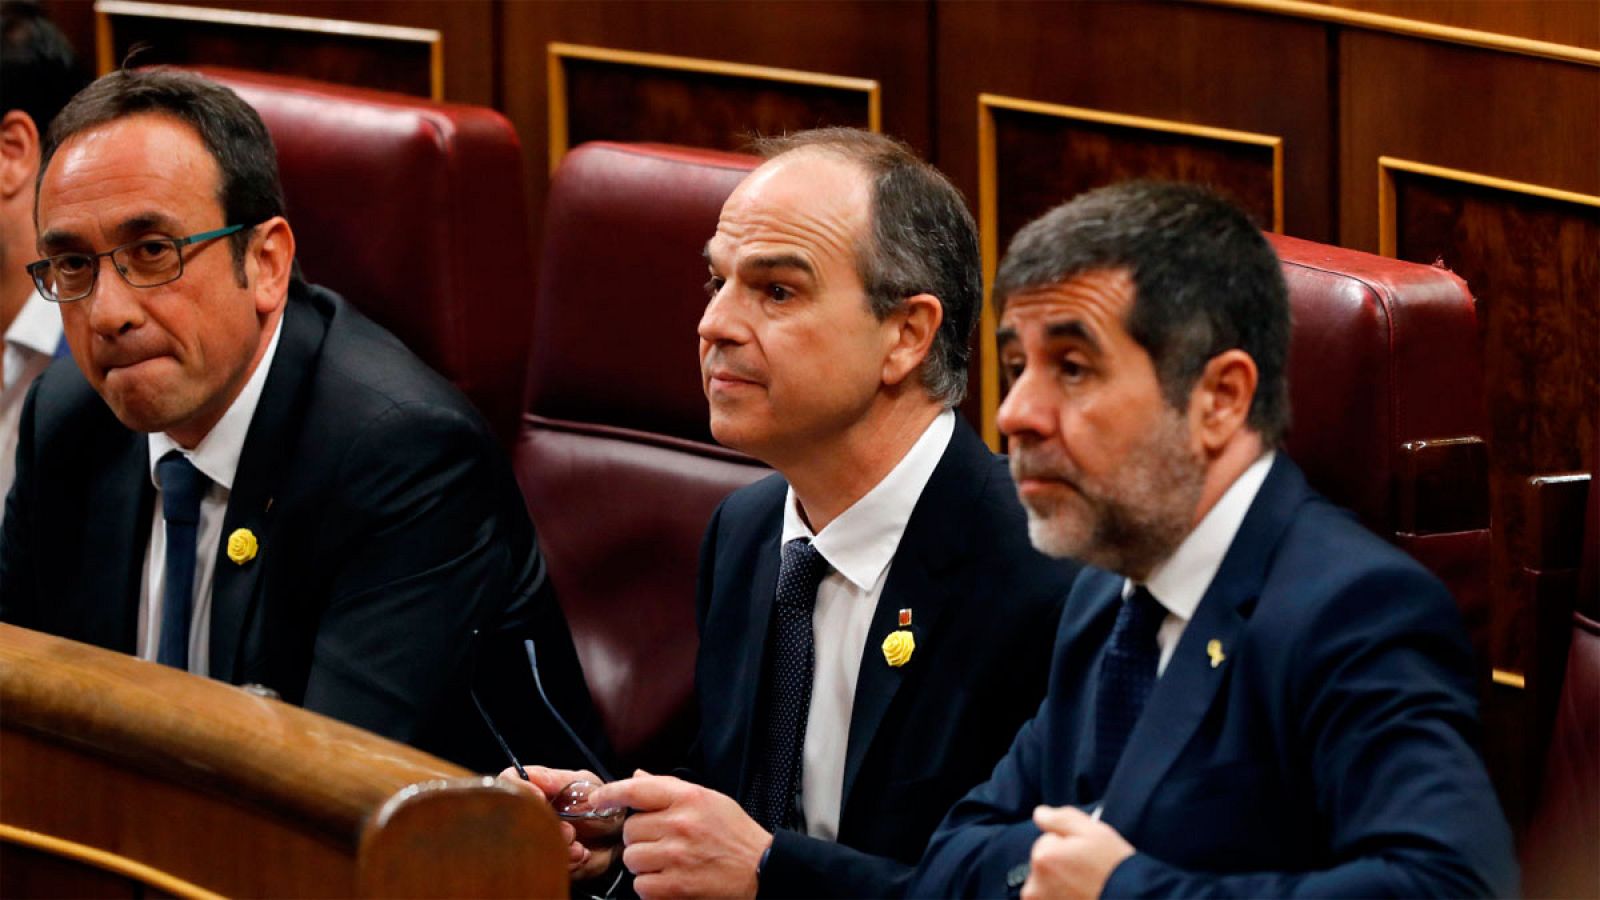 Josep Rull, Jordi Sànchez (d) y Jordi Turull (c) en el Congreso de los Diputados en una imagen de archivo